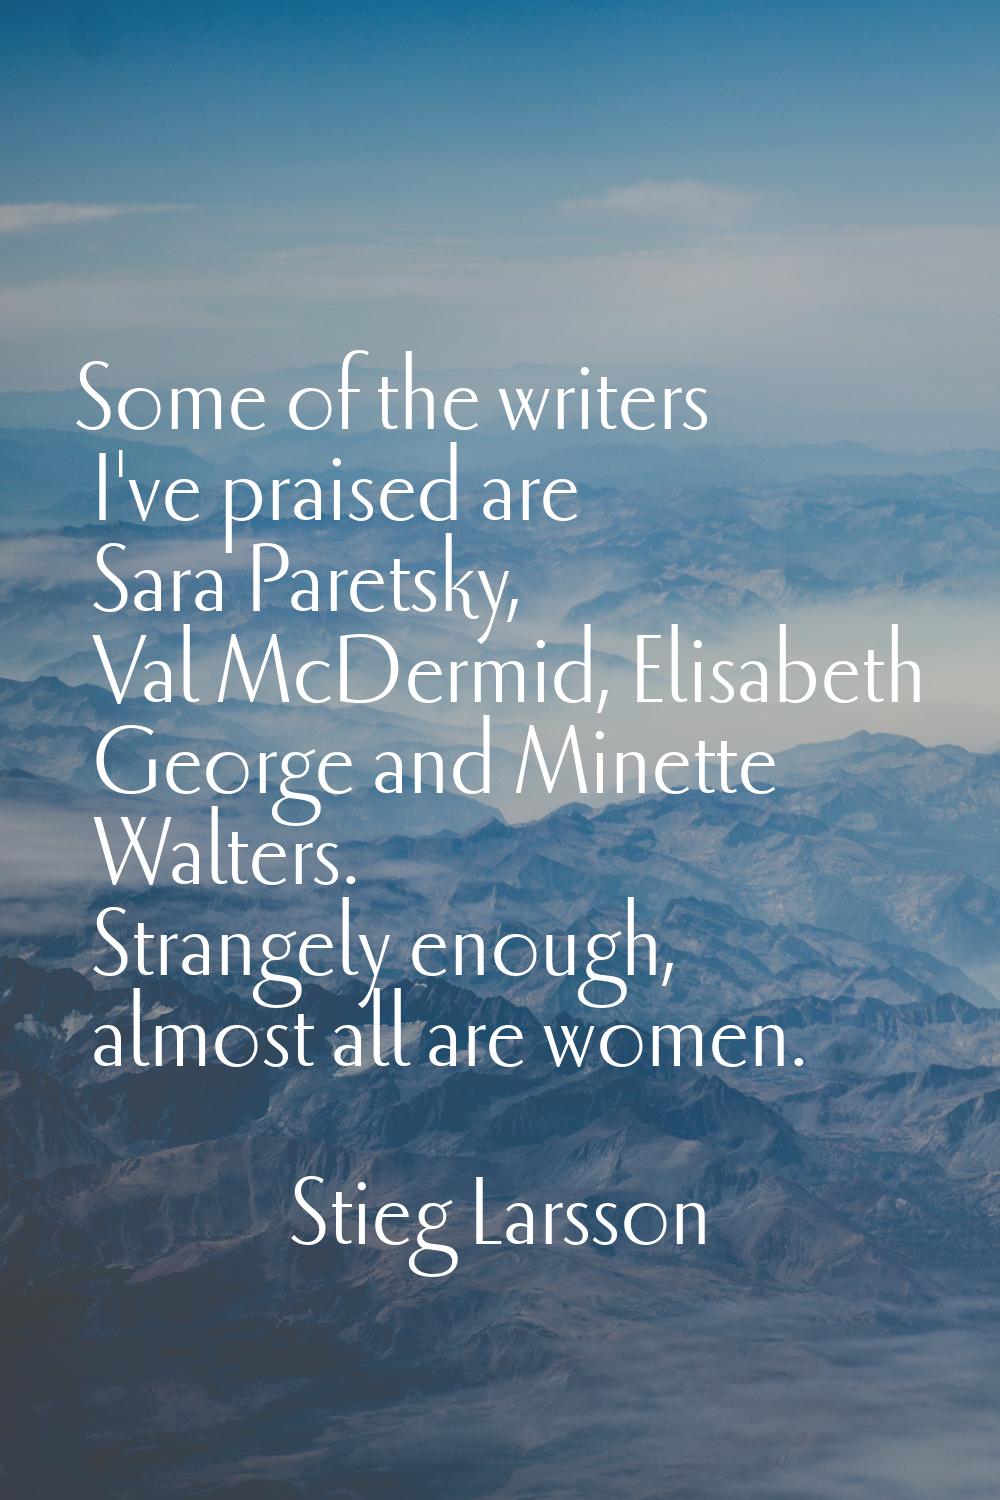 Some of the writers I've praised are Sara Paretsky, Val McDermid, Elisabeth George and Minette Walt